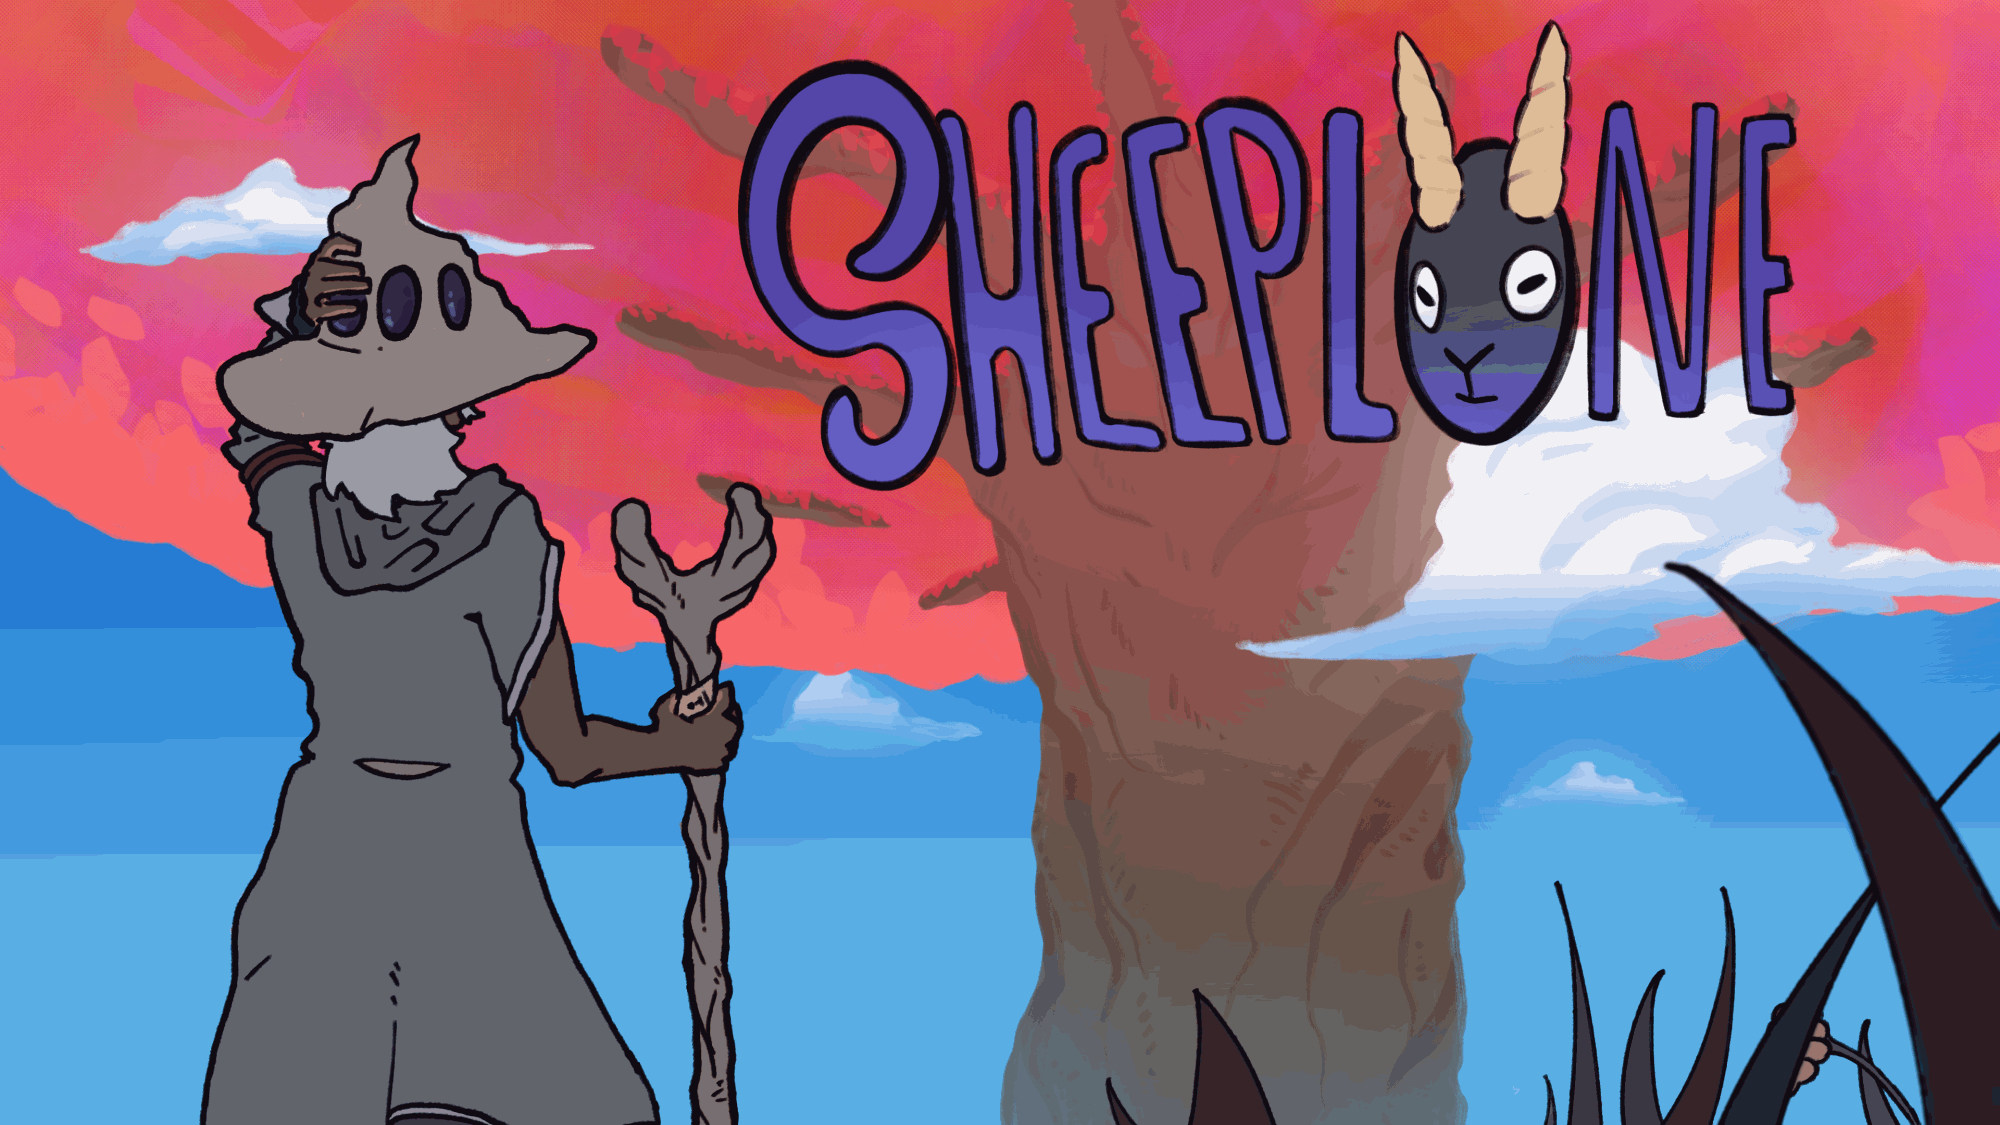 Sheeplone